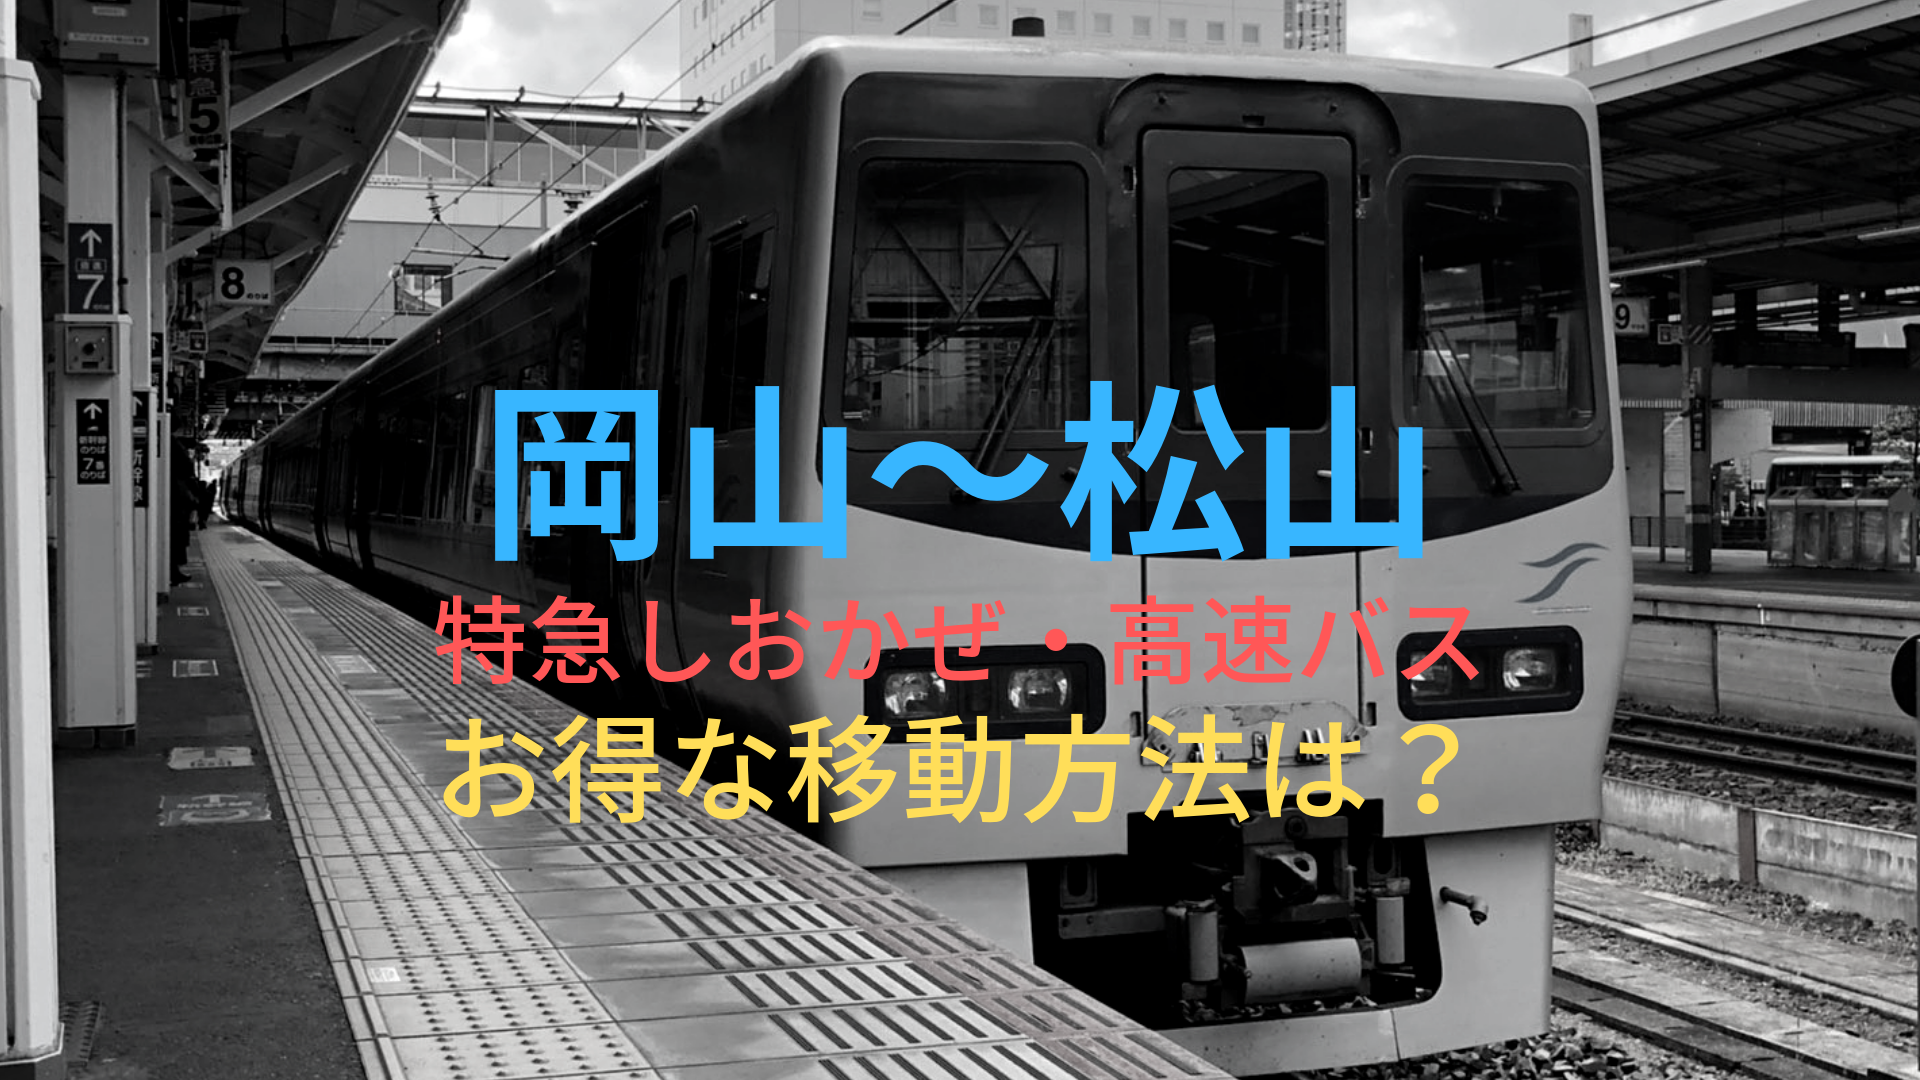 岡山 松山 4000円 格安で移動する方法は 特急しおかぜ 高速バスをそれぞれ比較 ばしたく交通